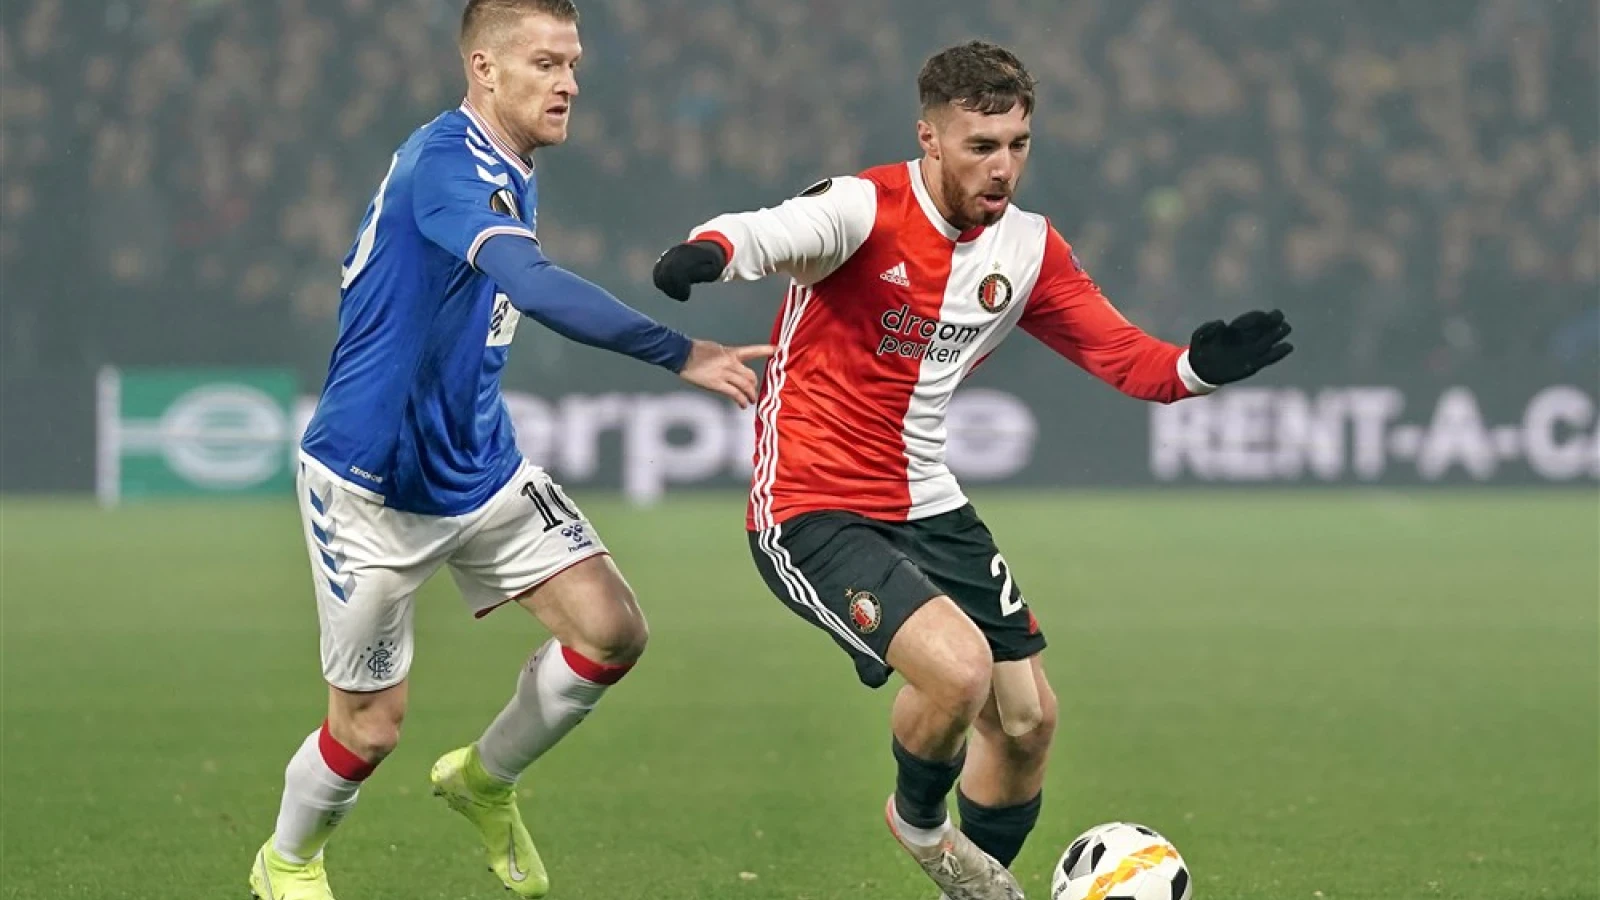 LIVE | Feyenoord - Rangers FC 2-2 | Einde wedstrijd